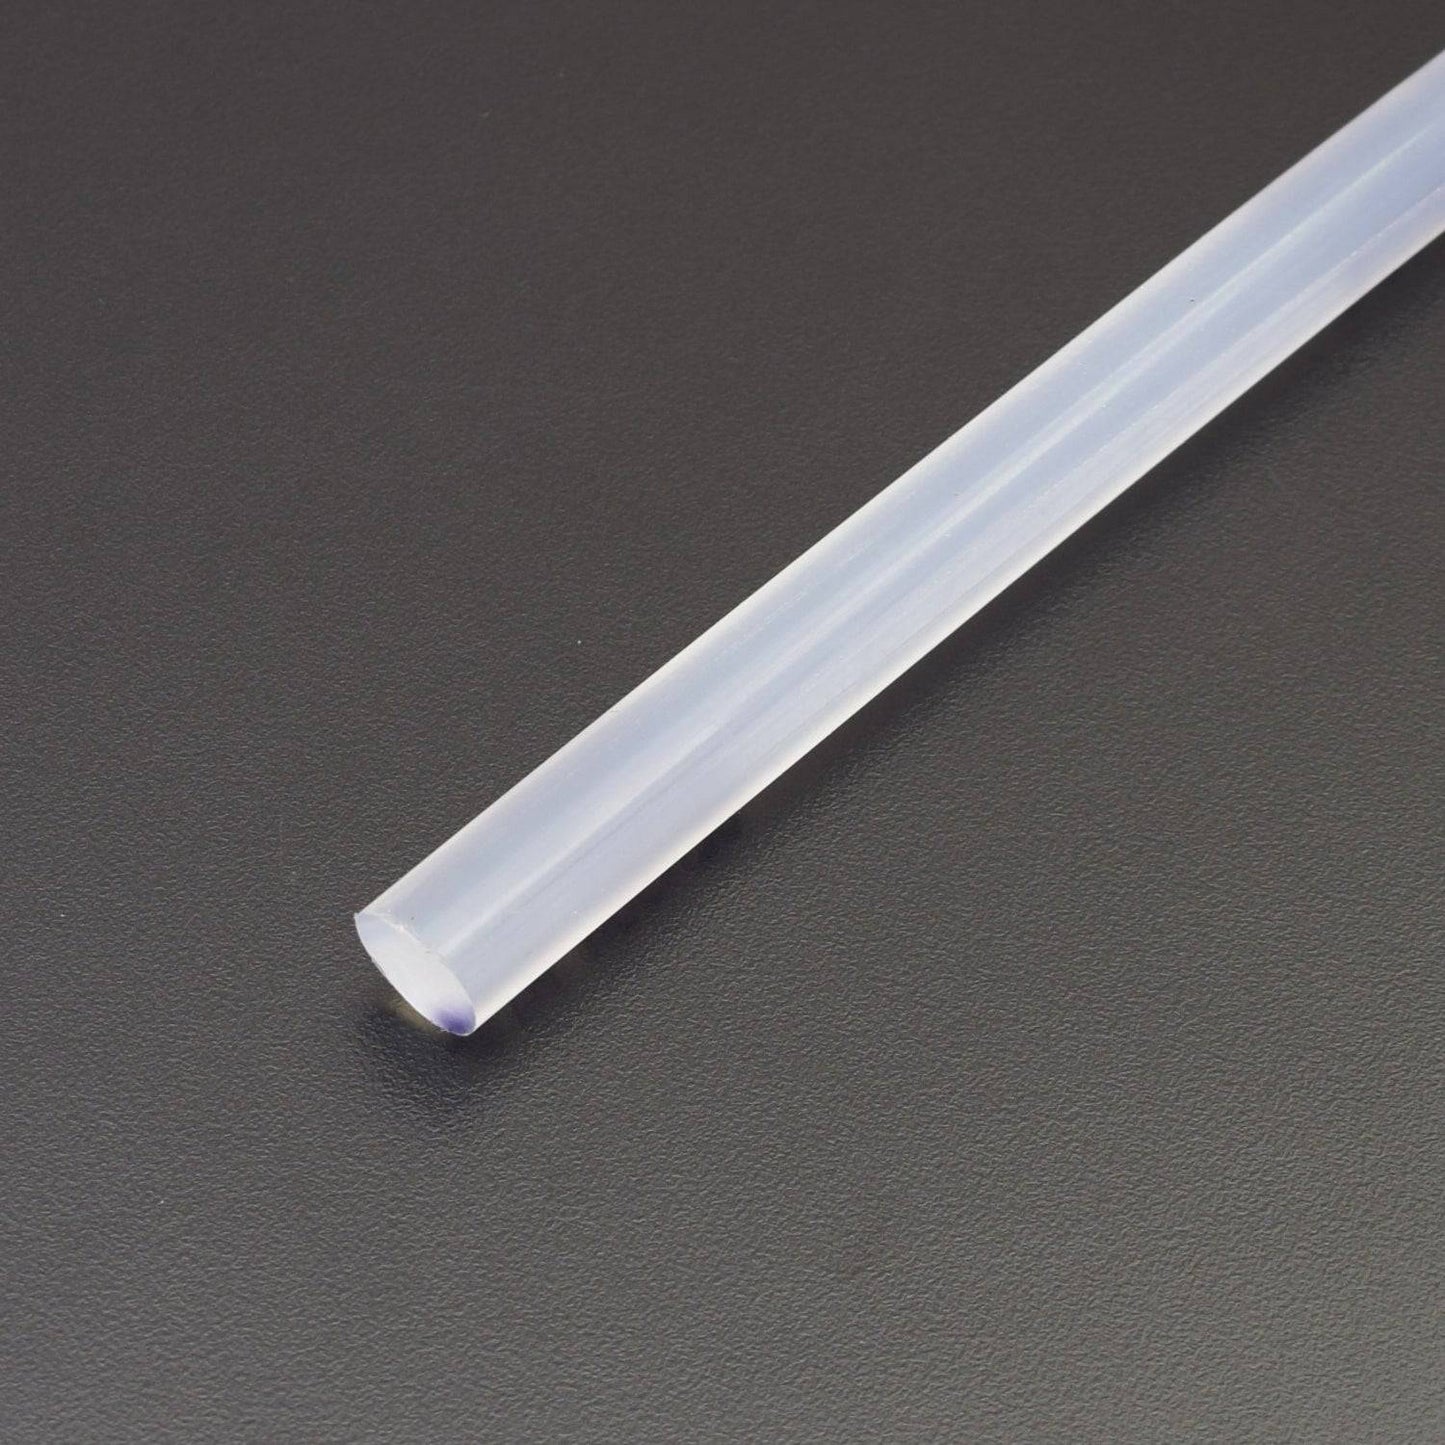 10 Inch Hot Melt Glue Stick - ER048 - REES52